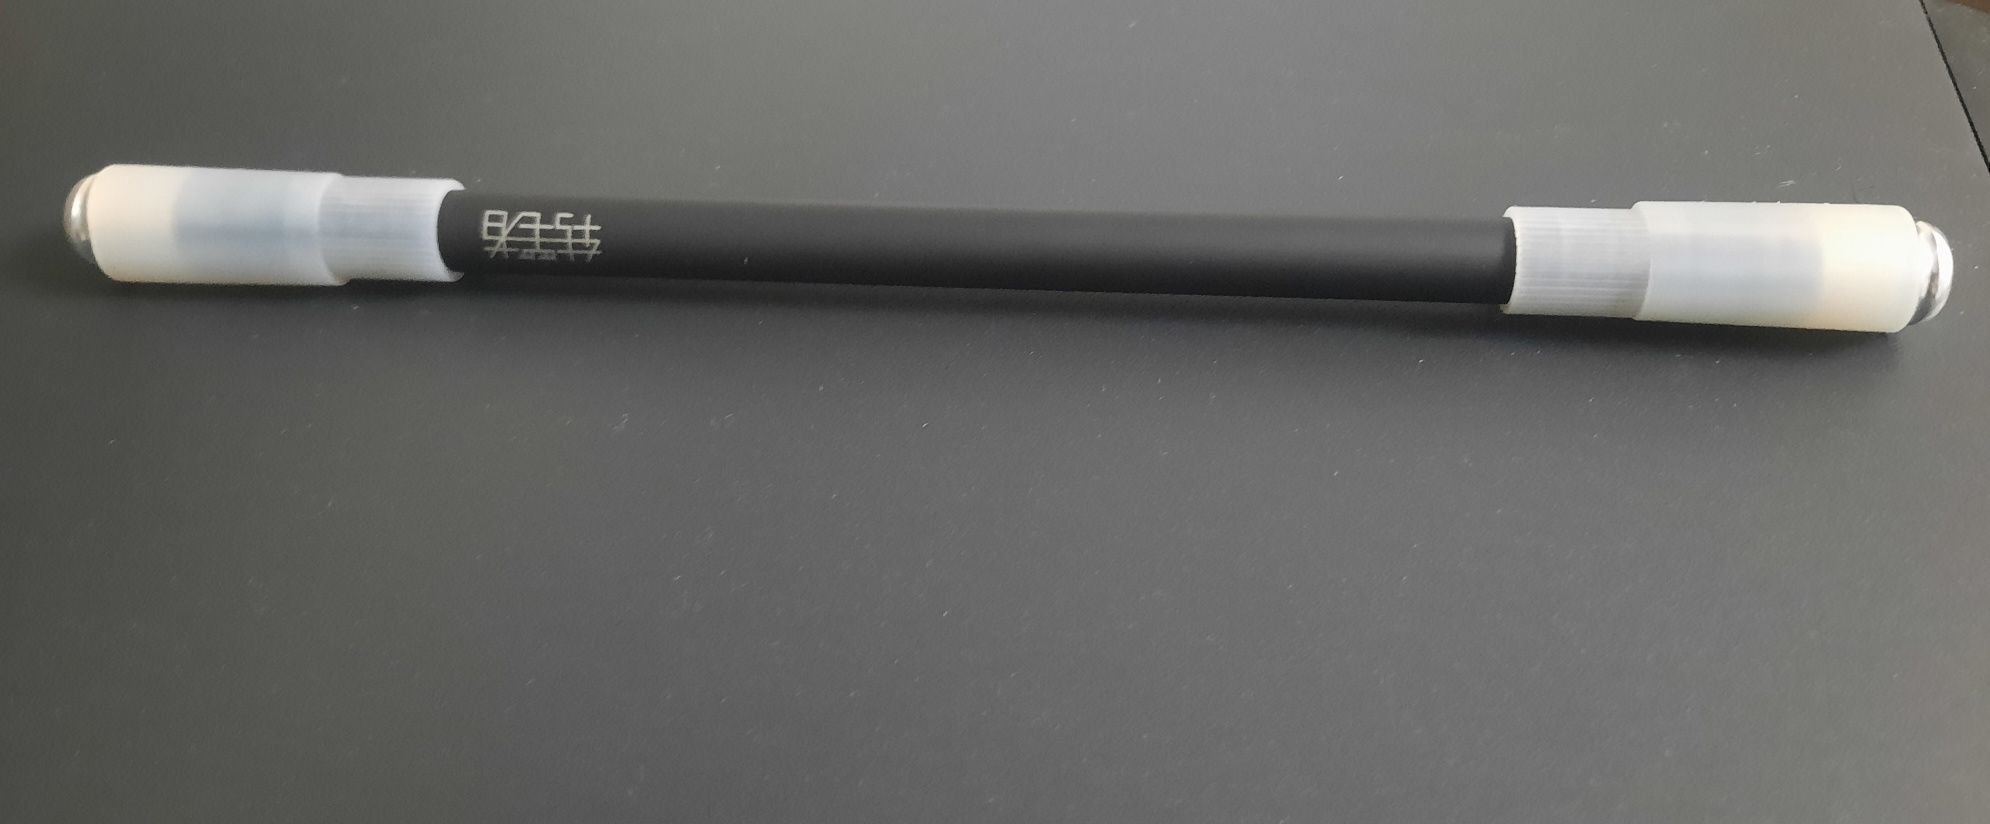 Специальная трюковая ручка для пенспининга